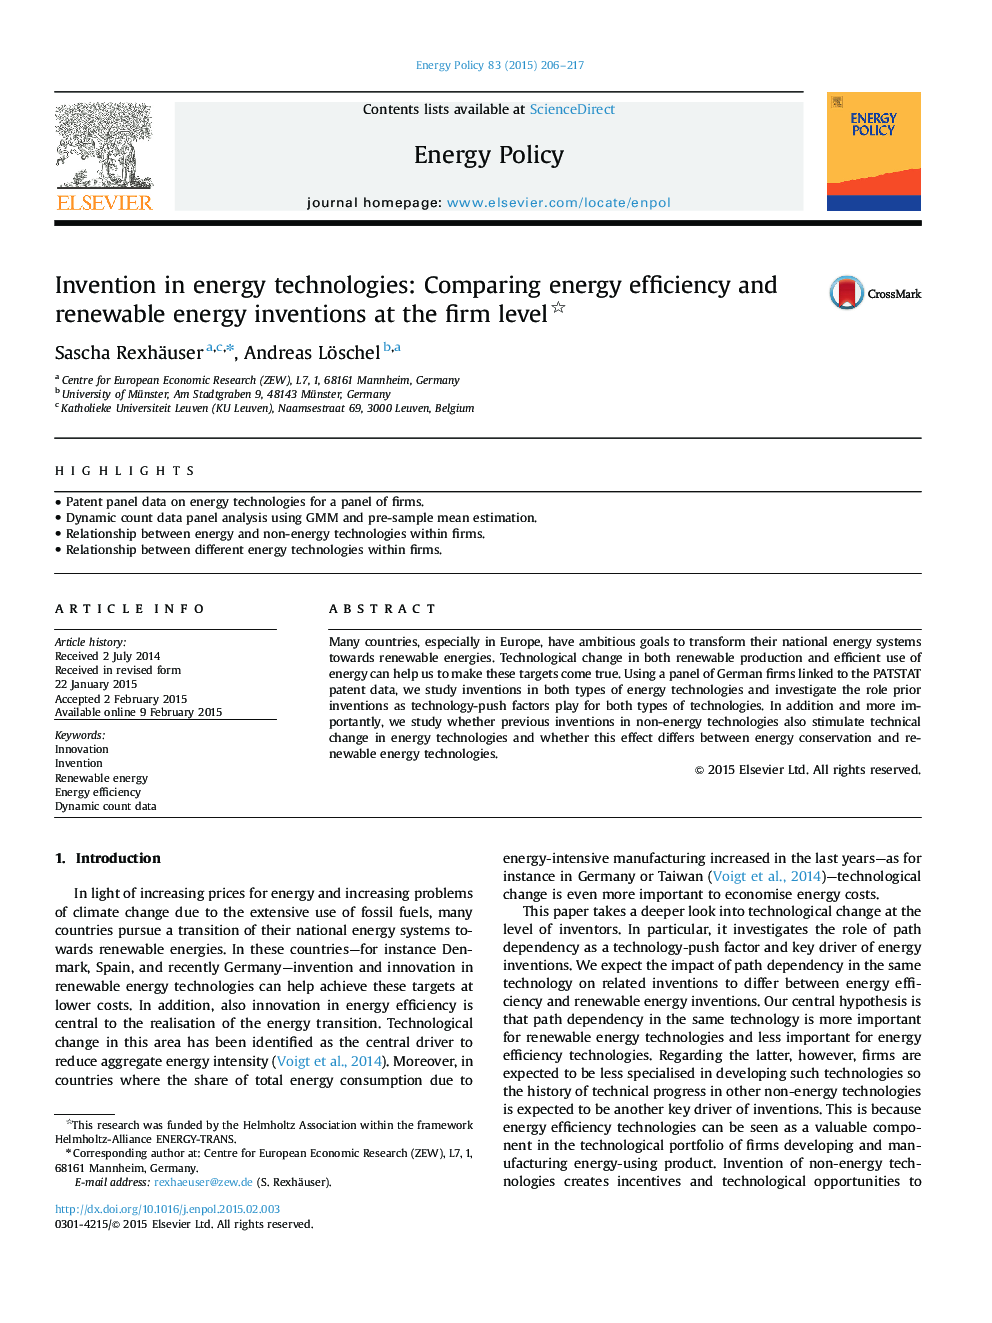 اختراع در فن آوری های انرژی: مقایسه بهره وری انرژی و اختراعات انرژی های تجدید پذیر در سطح شرکت